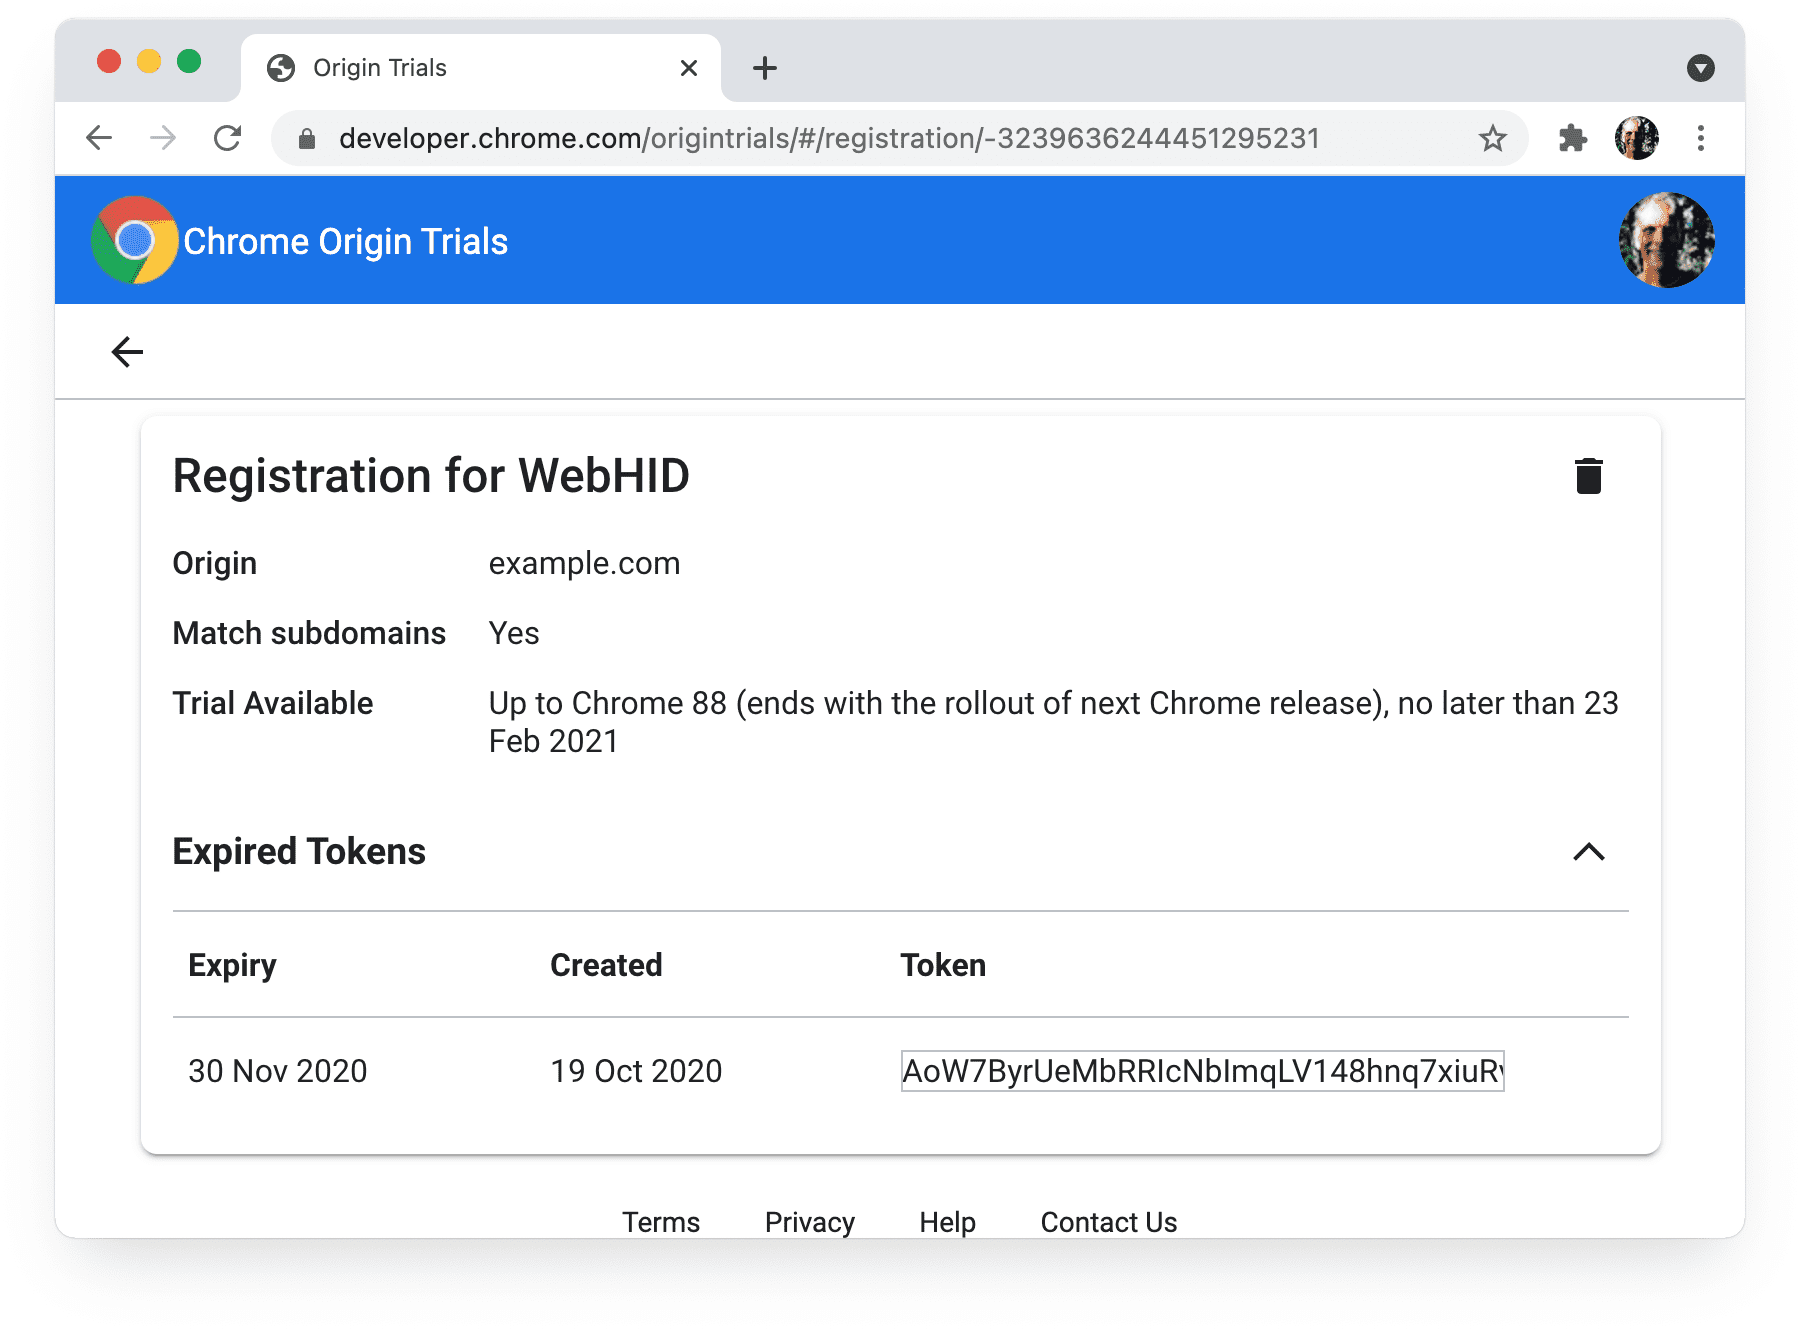 Uji coba origin Chrome 
Halaman Pendaftaran Saya menampilkan token yang sudah tidak berlaku.